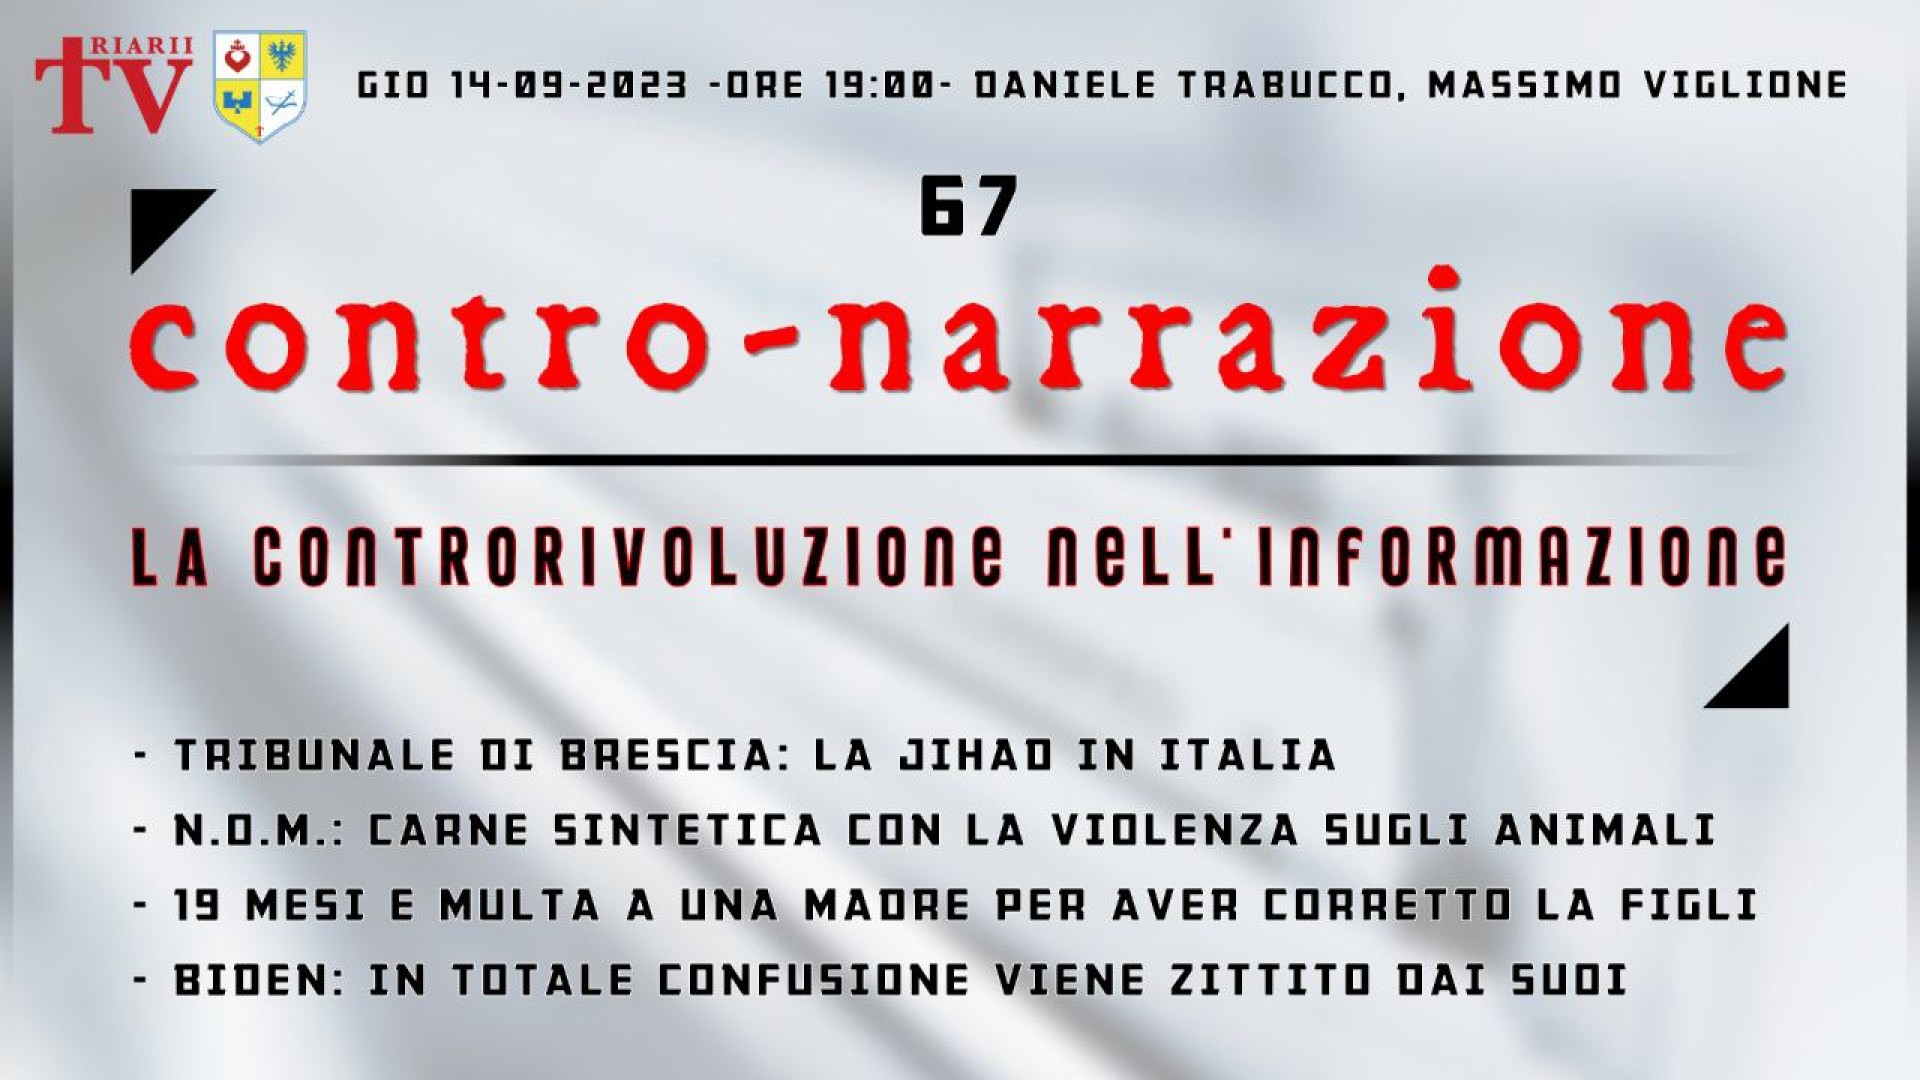 CONTRO-NARRAZIONE NR.67 - GIOV 14 SETTEMBRE 2023 - Daniele Trabucco, Massimo Viglione